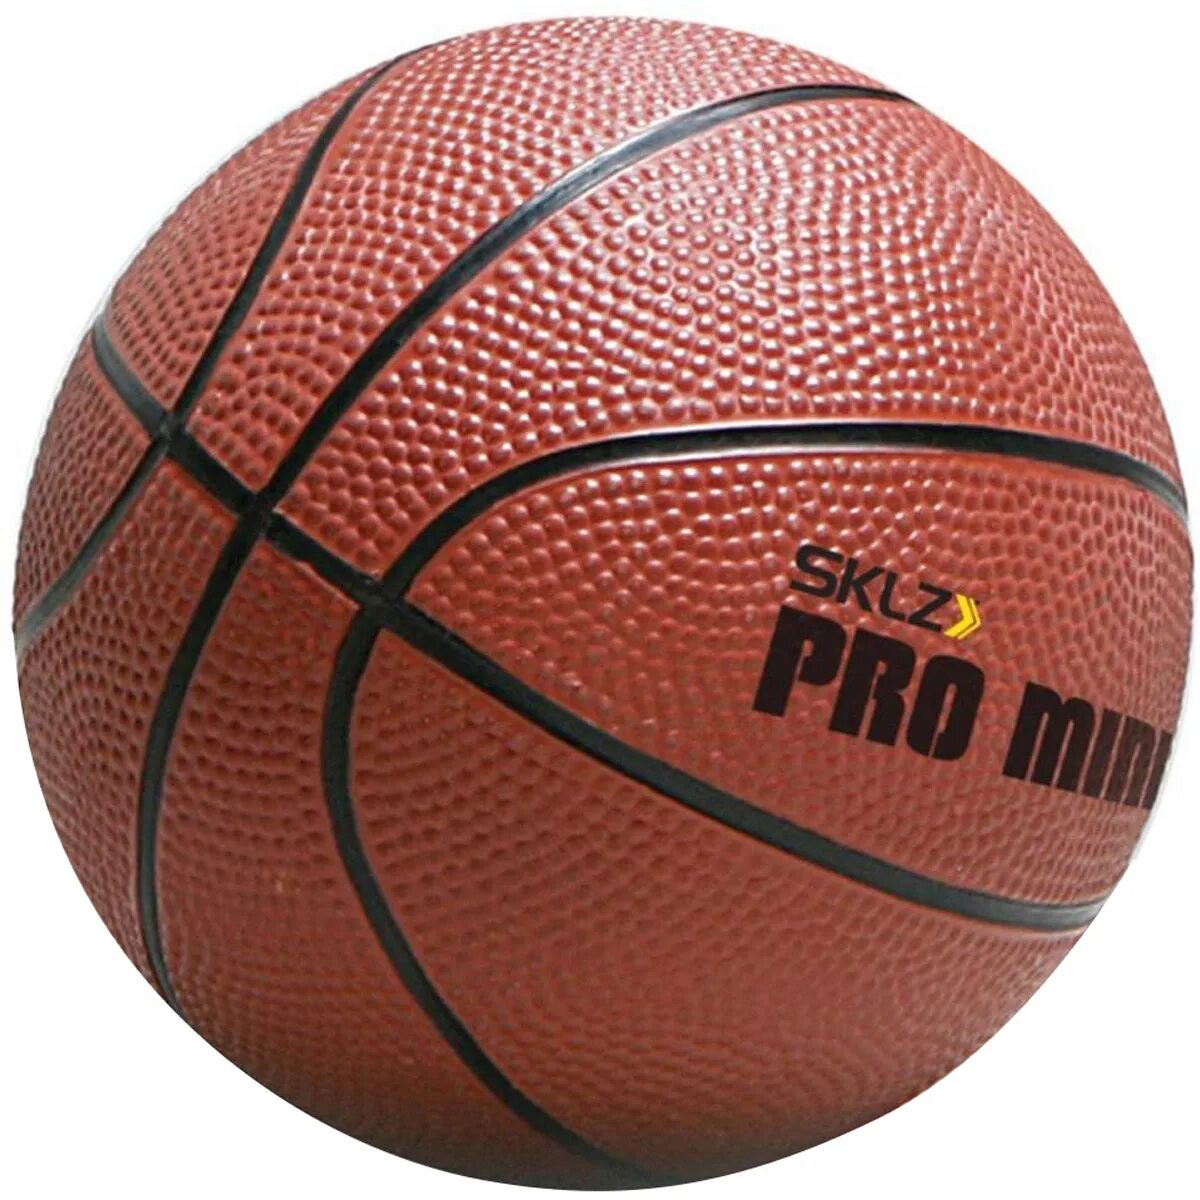 Спортивные магазины баскетбольные мячи. Мяч баскетбольный мини Баскет 5. Баскетбольный мяч lel Pro b200. Nice shoot мяч баскетбольный.